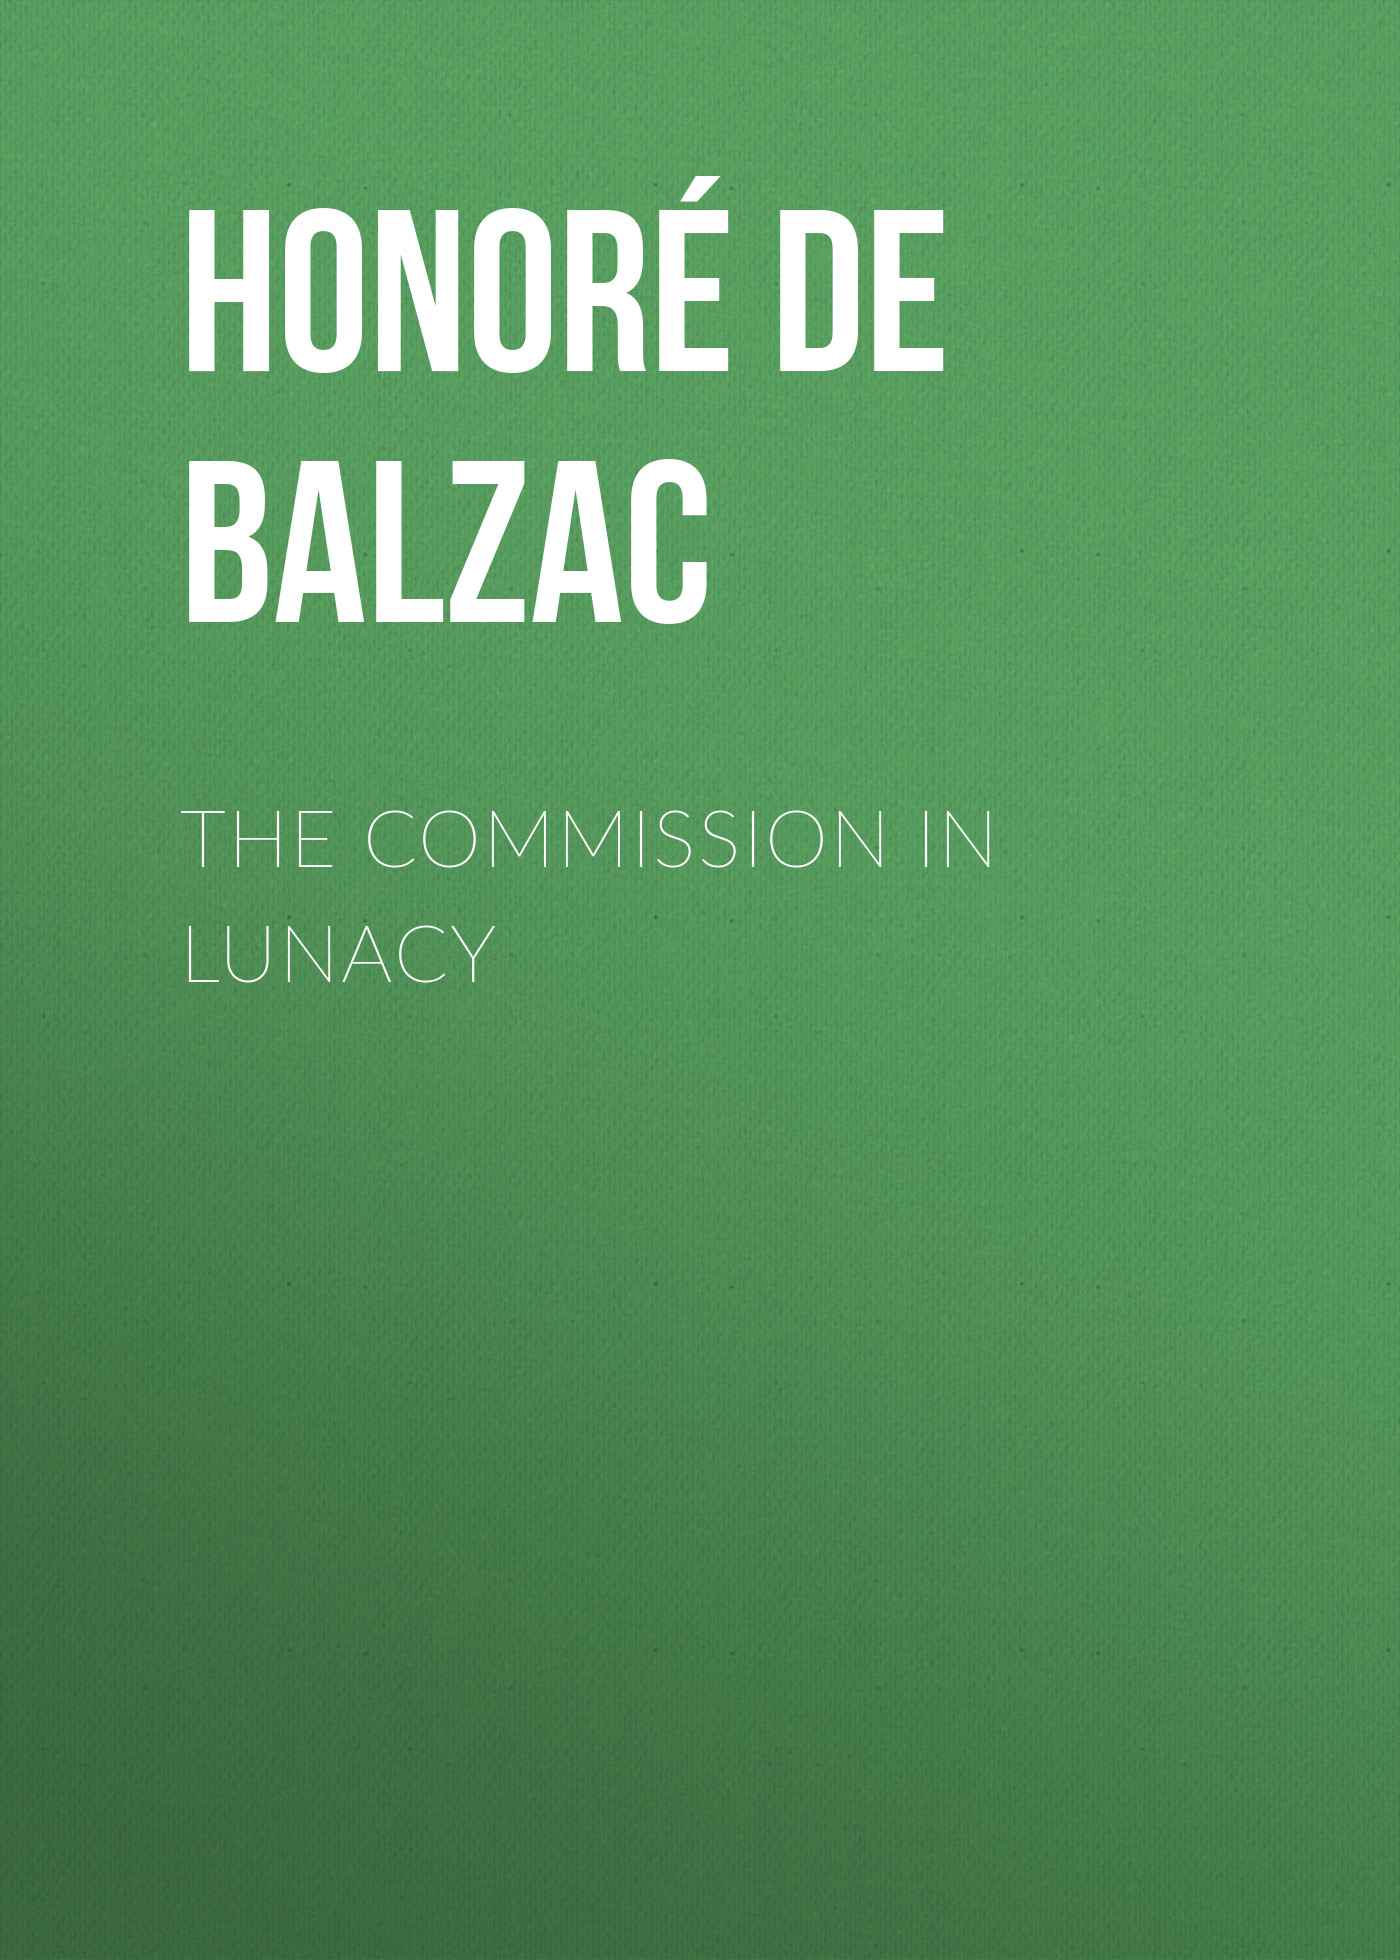 Книга The Commission in Lunacy из серии , созданная Honoré Balzac, может относится к жанру Литература 19 века, Зарубежная старинная литература, Зарубежная классика. Стоимость электронной книги The Commission in Lunacy с идентификатором 25020155 составляет 0 руб.